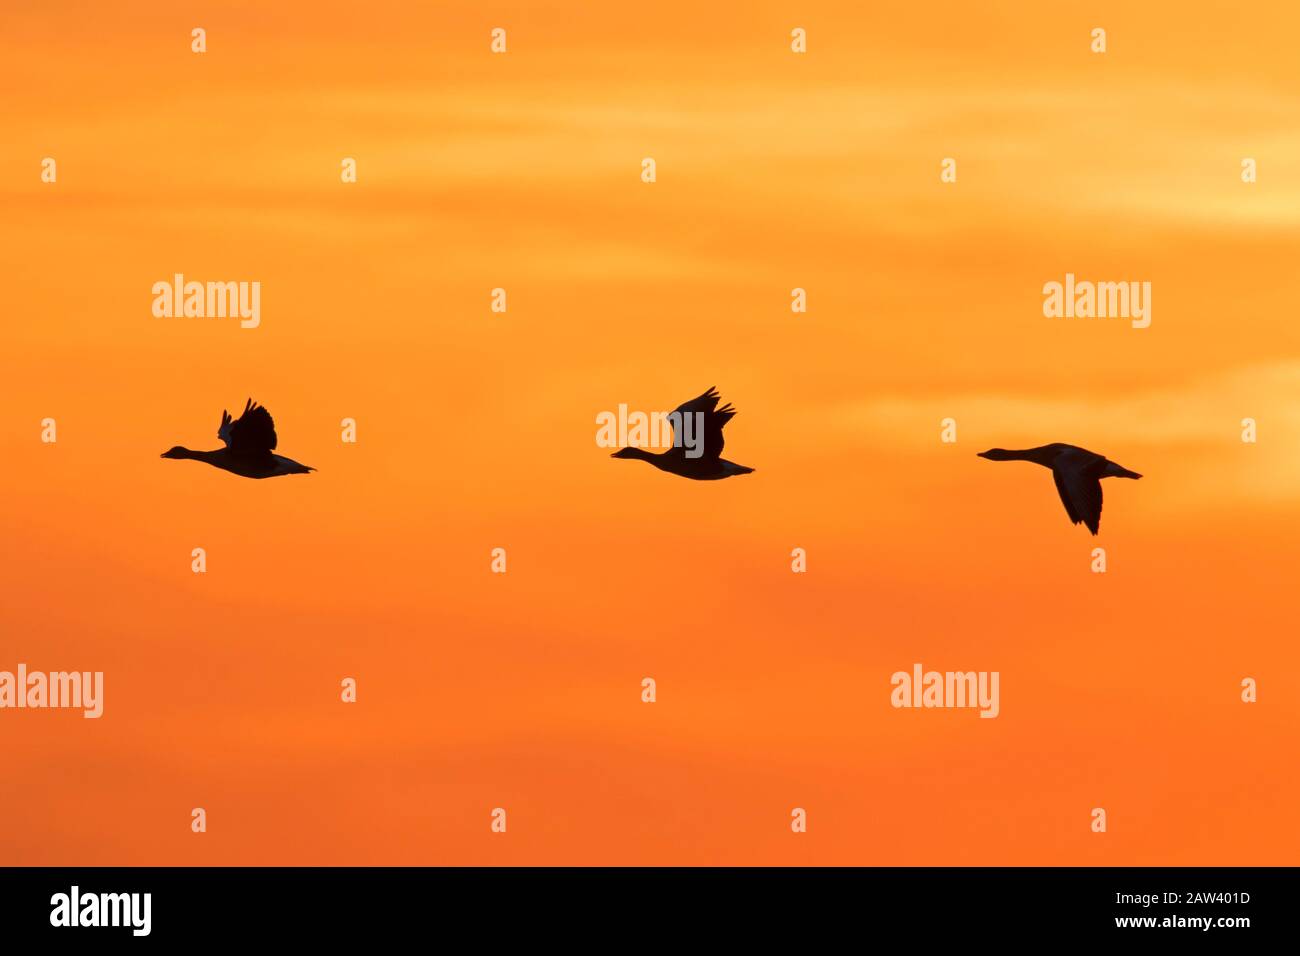 El rebaño de gansos de grislag migrando (Anser anser) silueta volando contra el cielo naranja al atardecer / amanecer Foto de stock